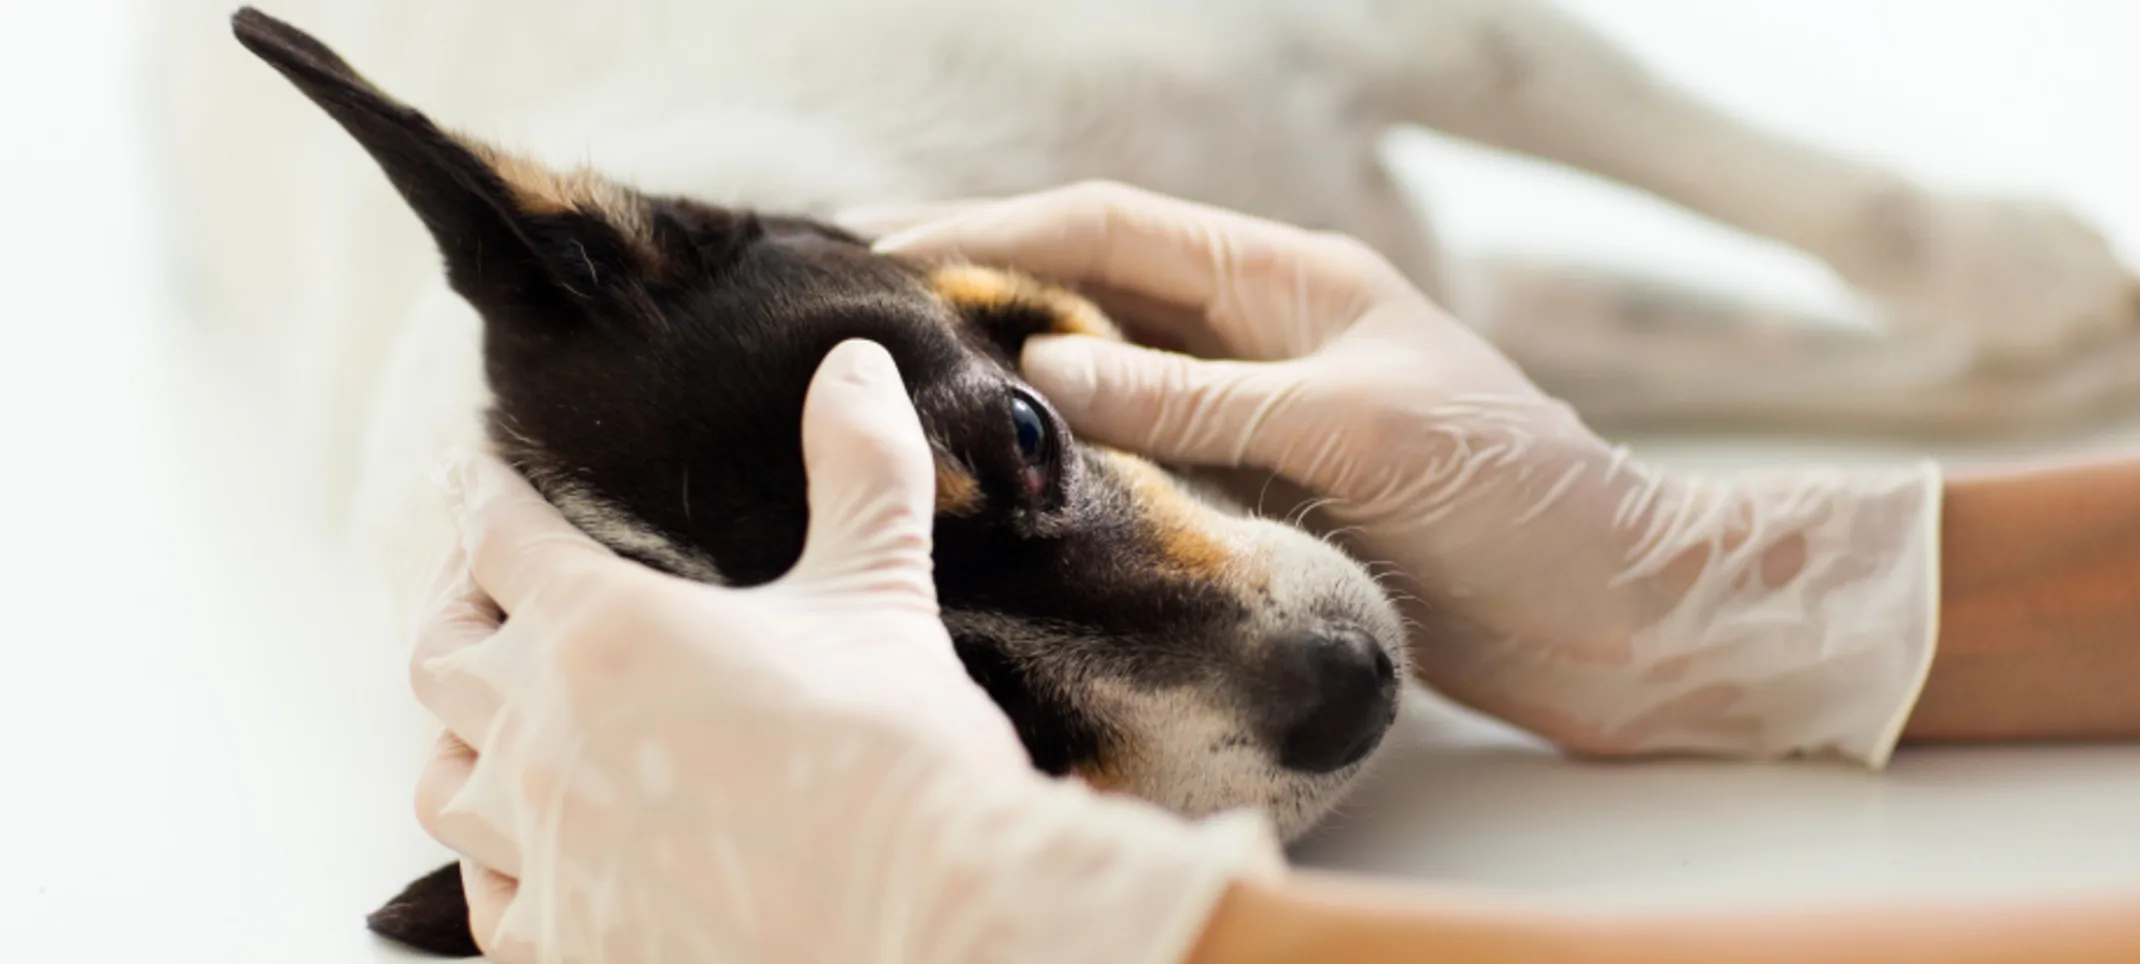 Dog receiving a tonometry exam